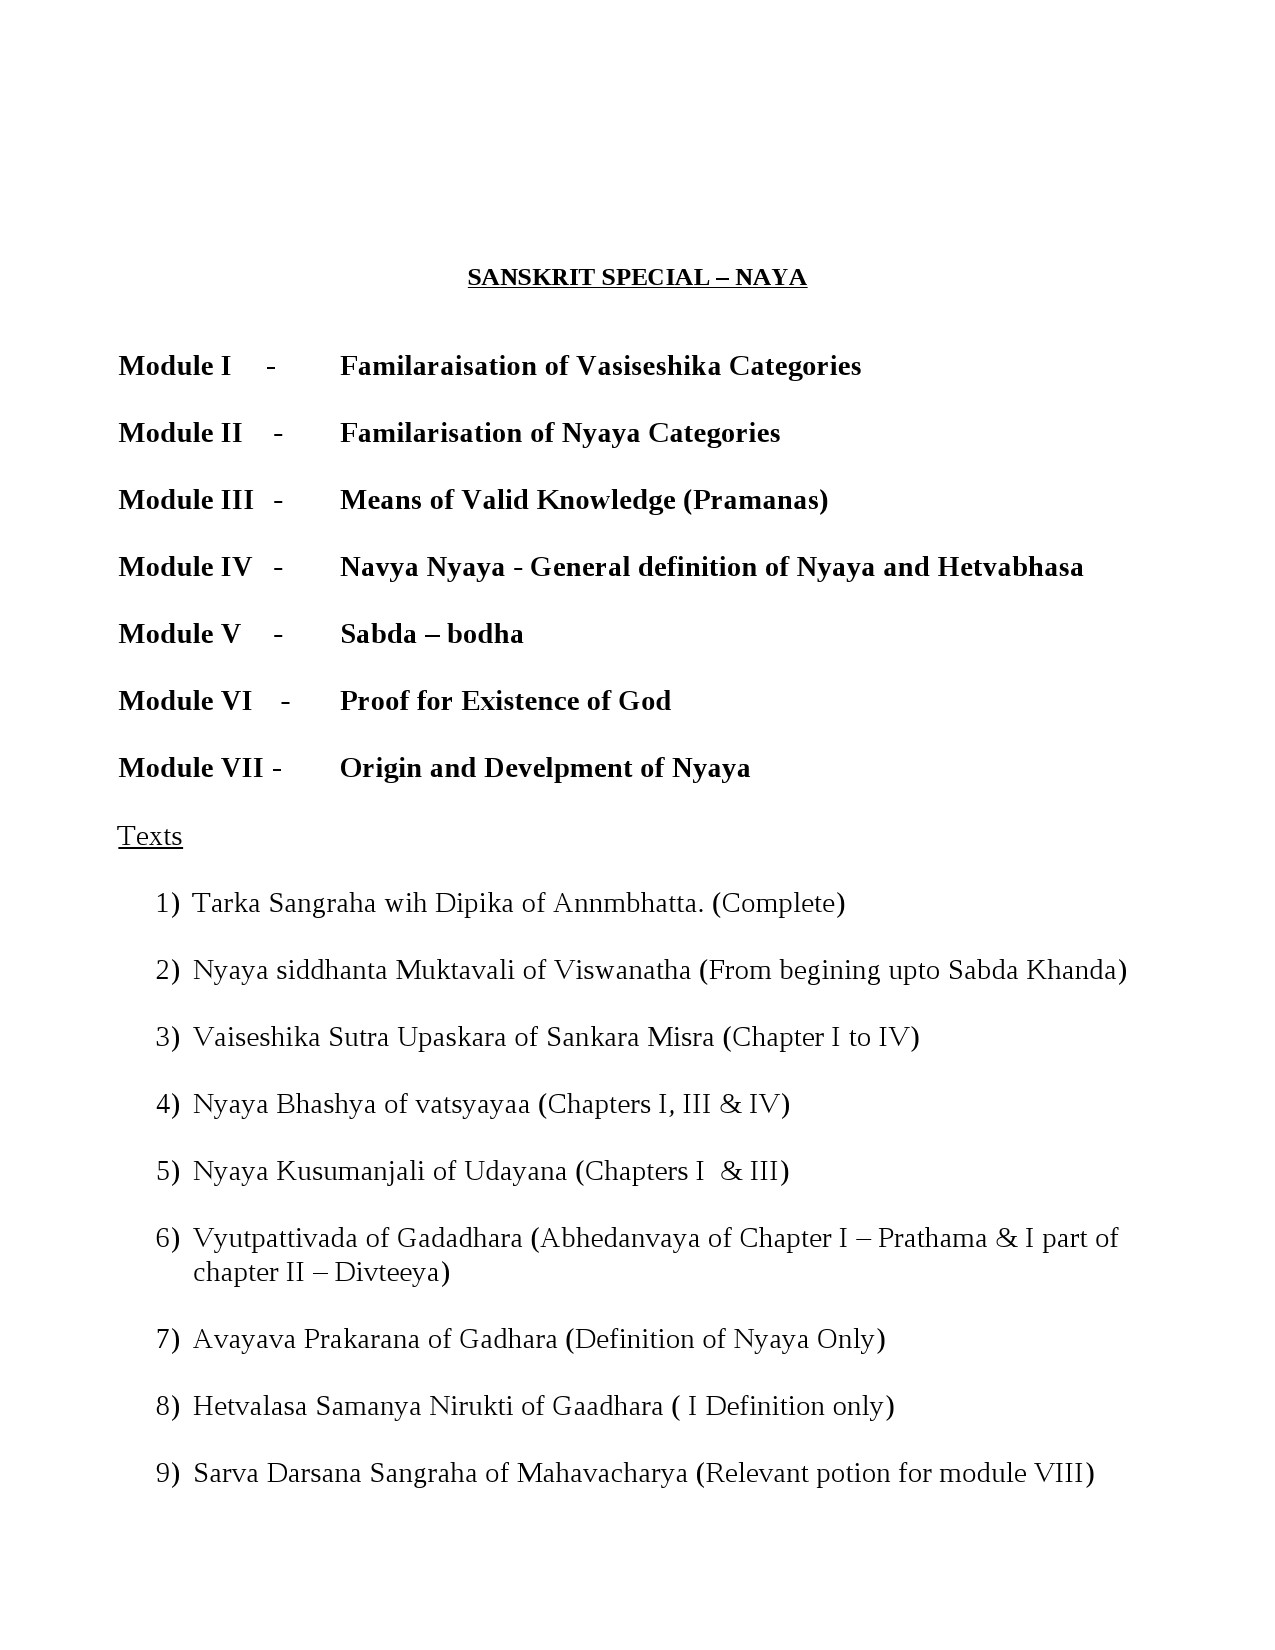 Sanskrit Syllabus for Kerala PSC 2021 Exam - Notification Image 10